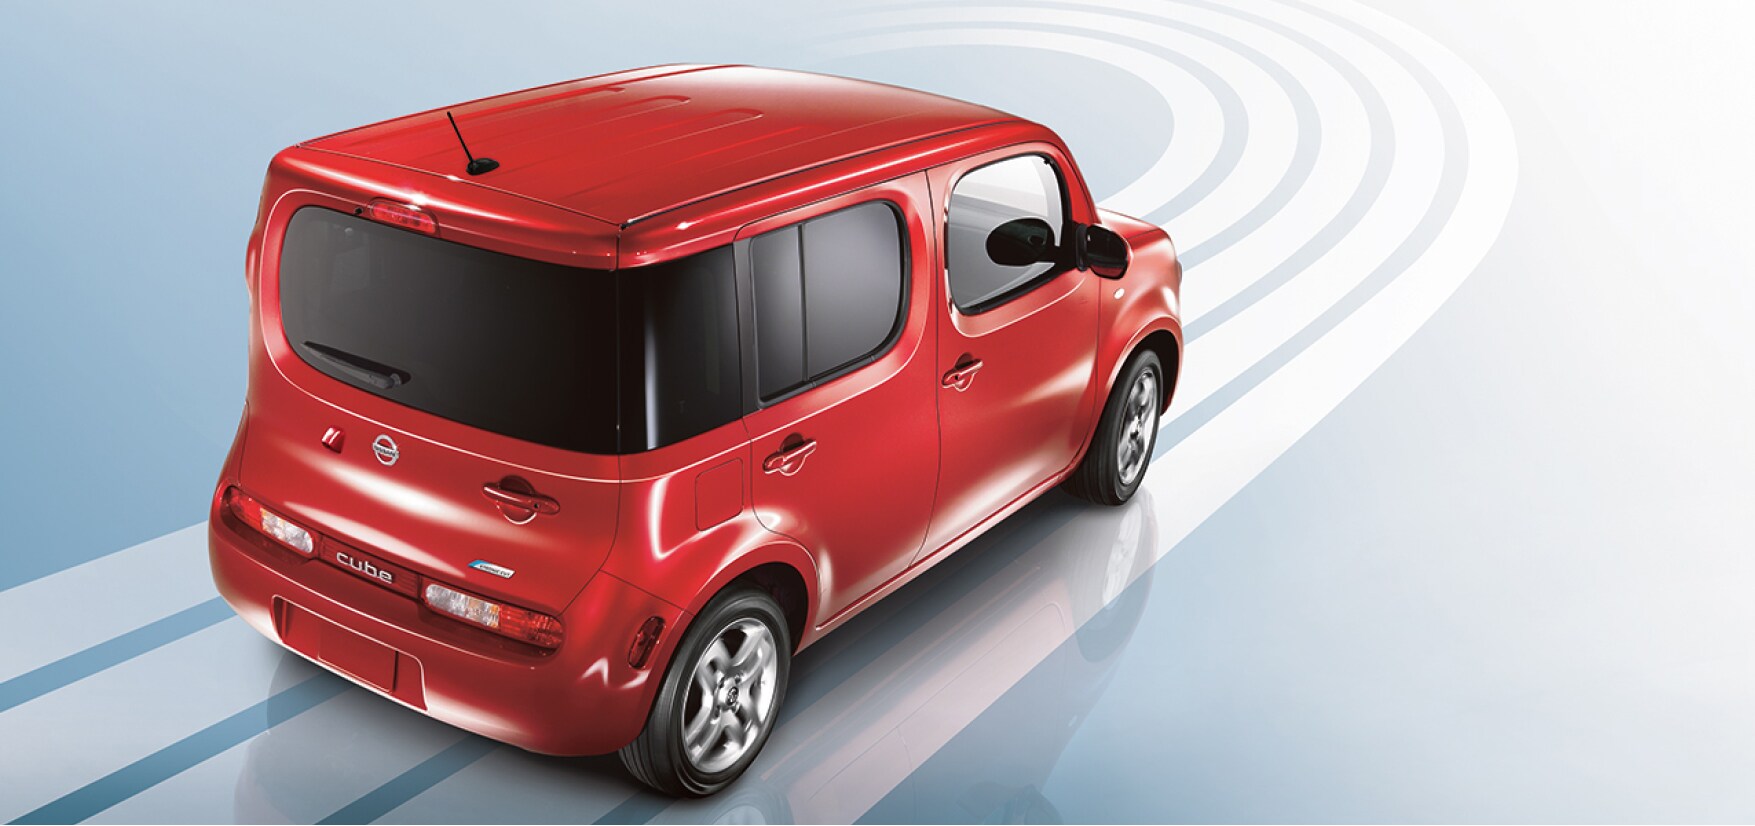 Nissan Cube rouge roulant sur fond bleu pour démontrer la consommation de carburant